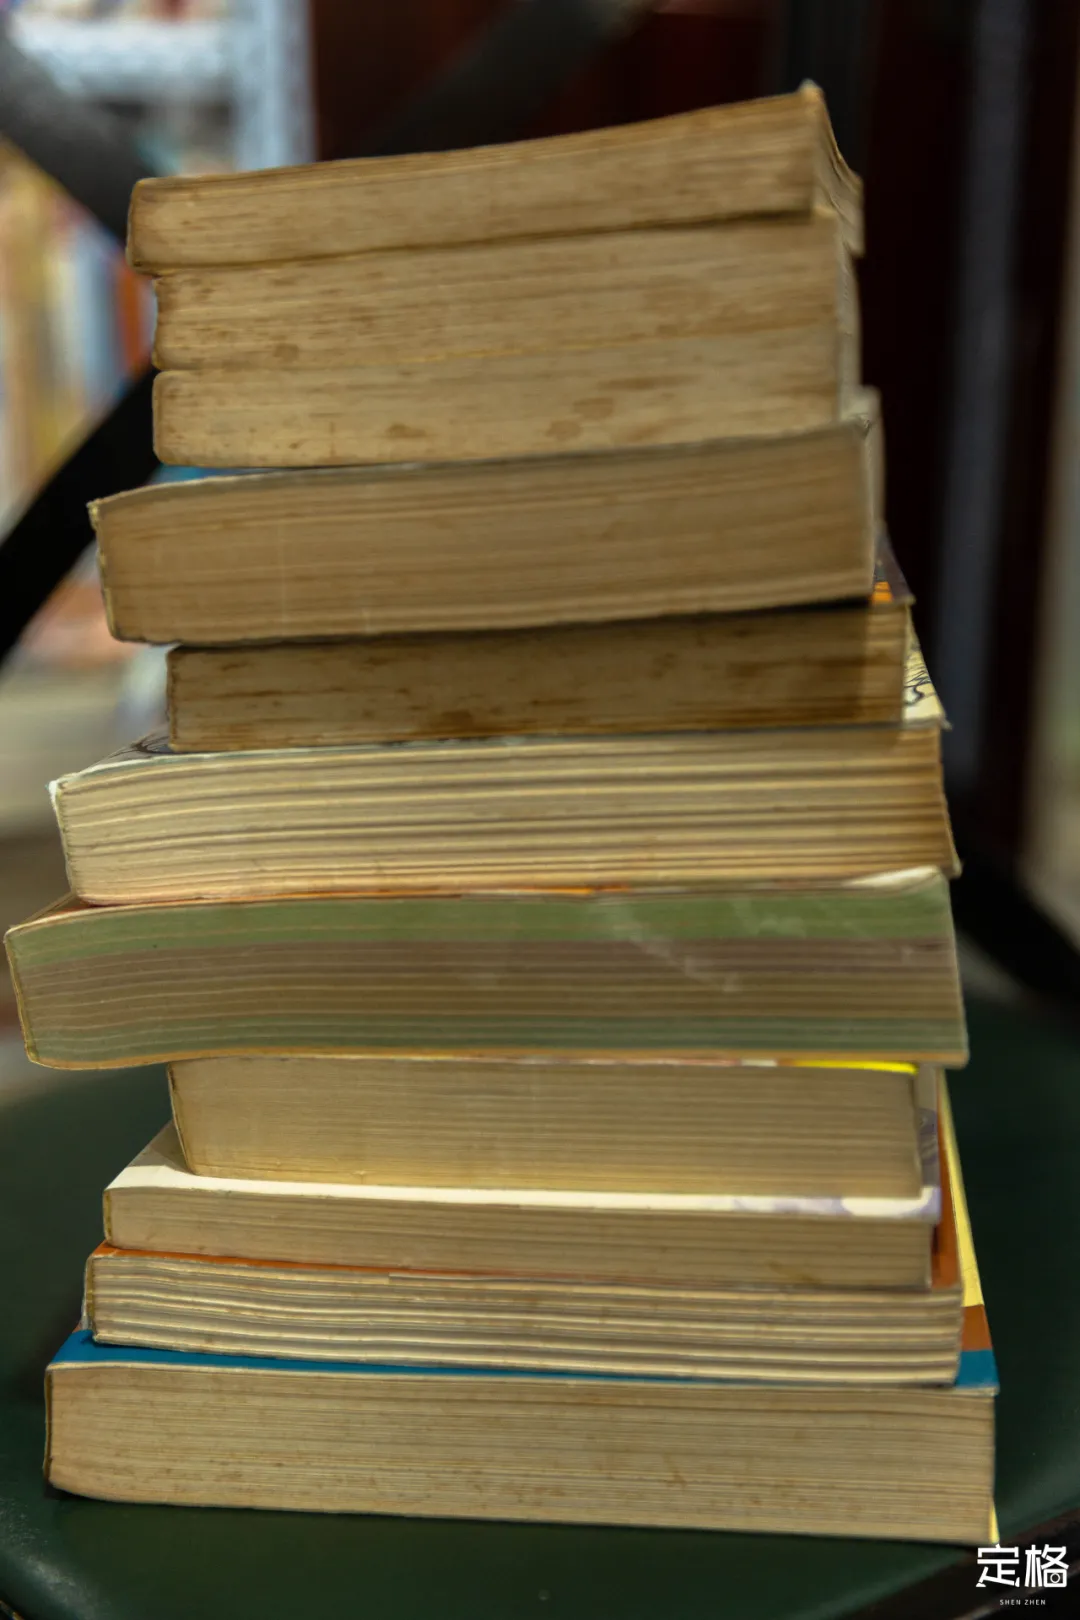 旧书今日多少钱一斤「大学旧书多少钱一本」